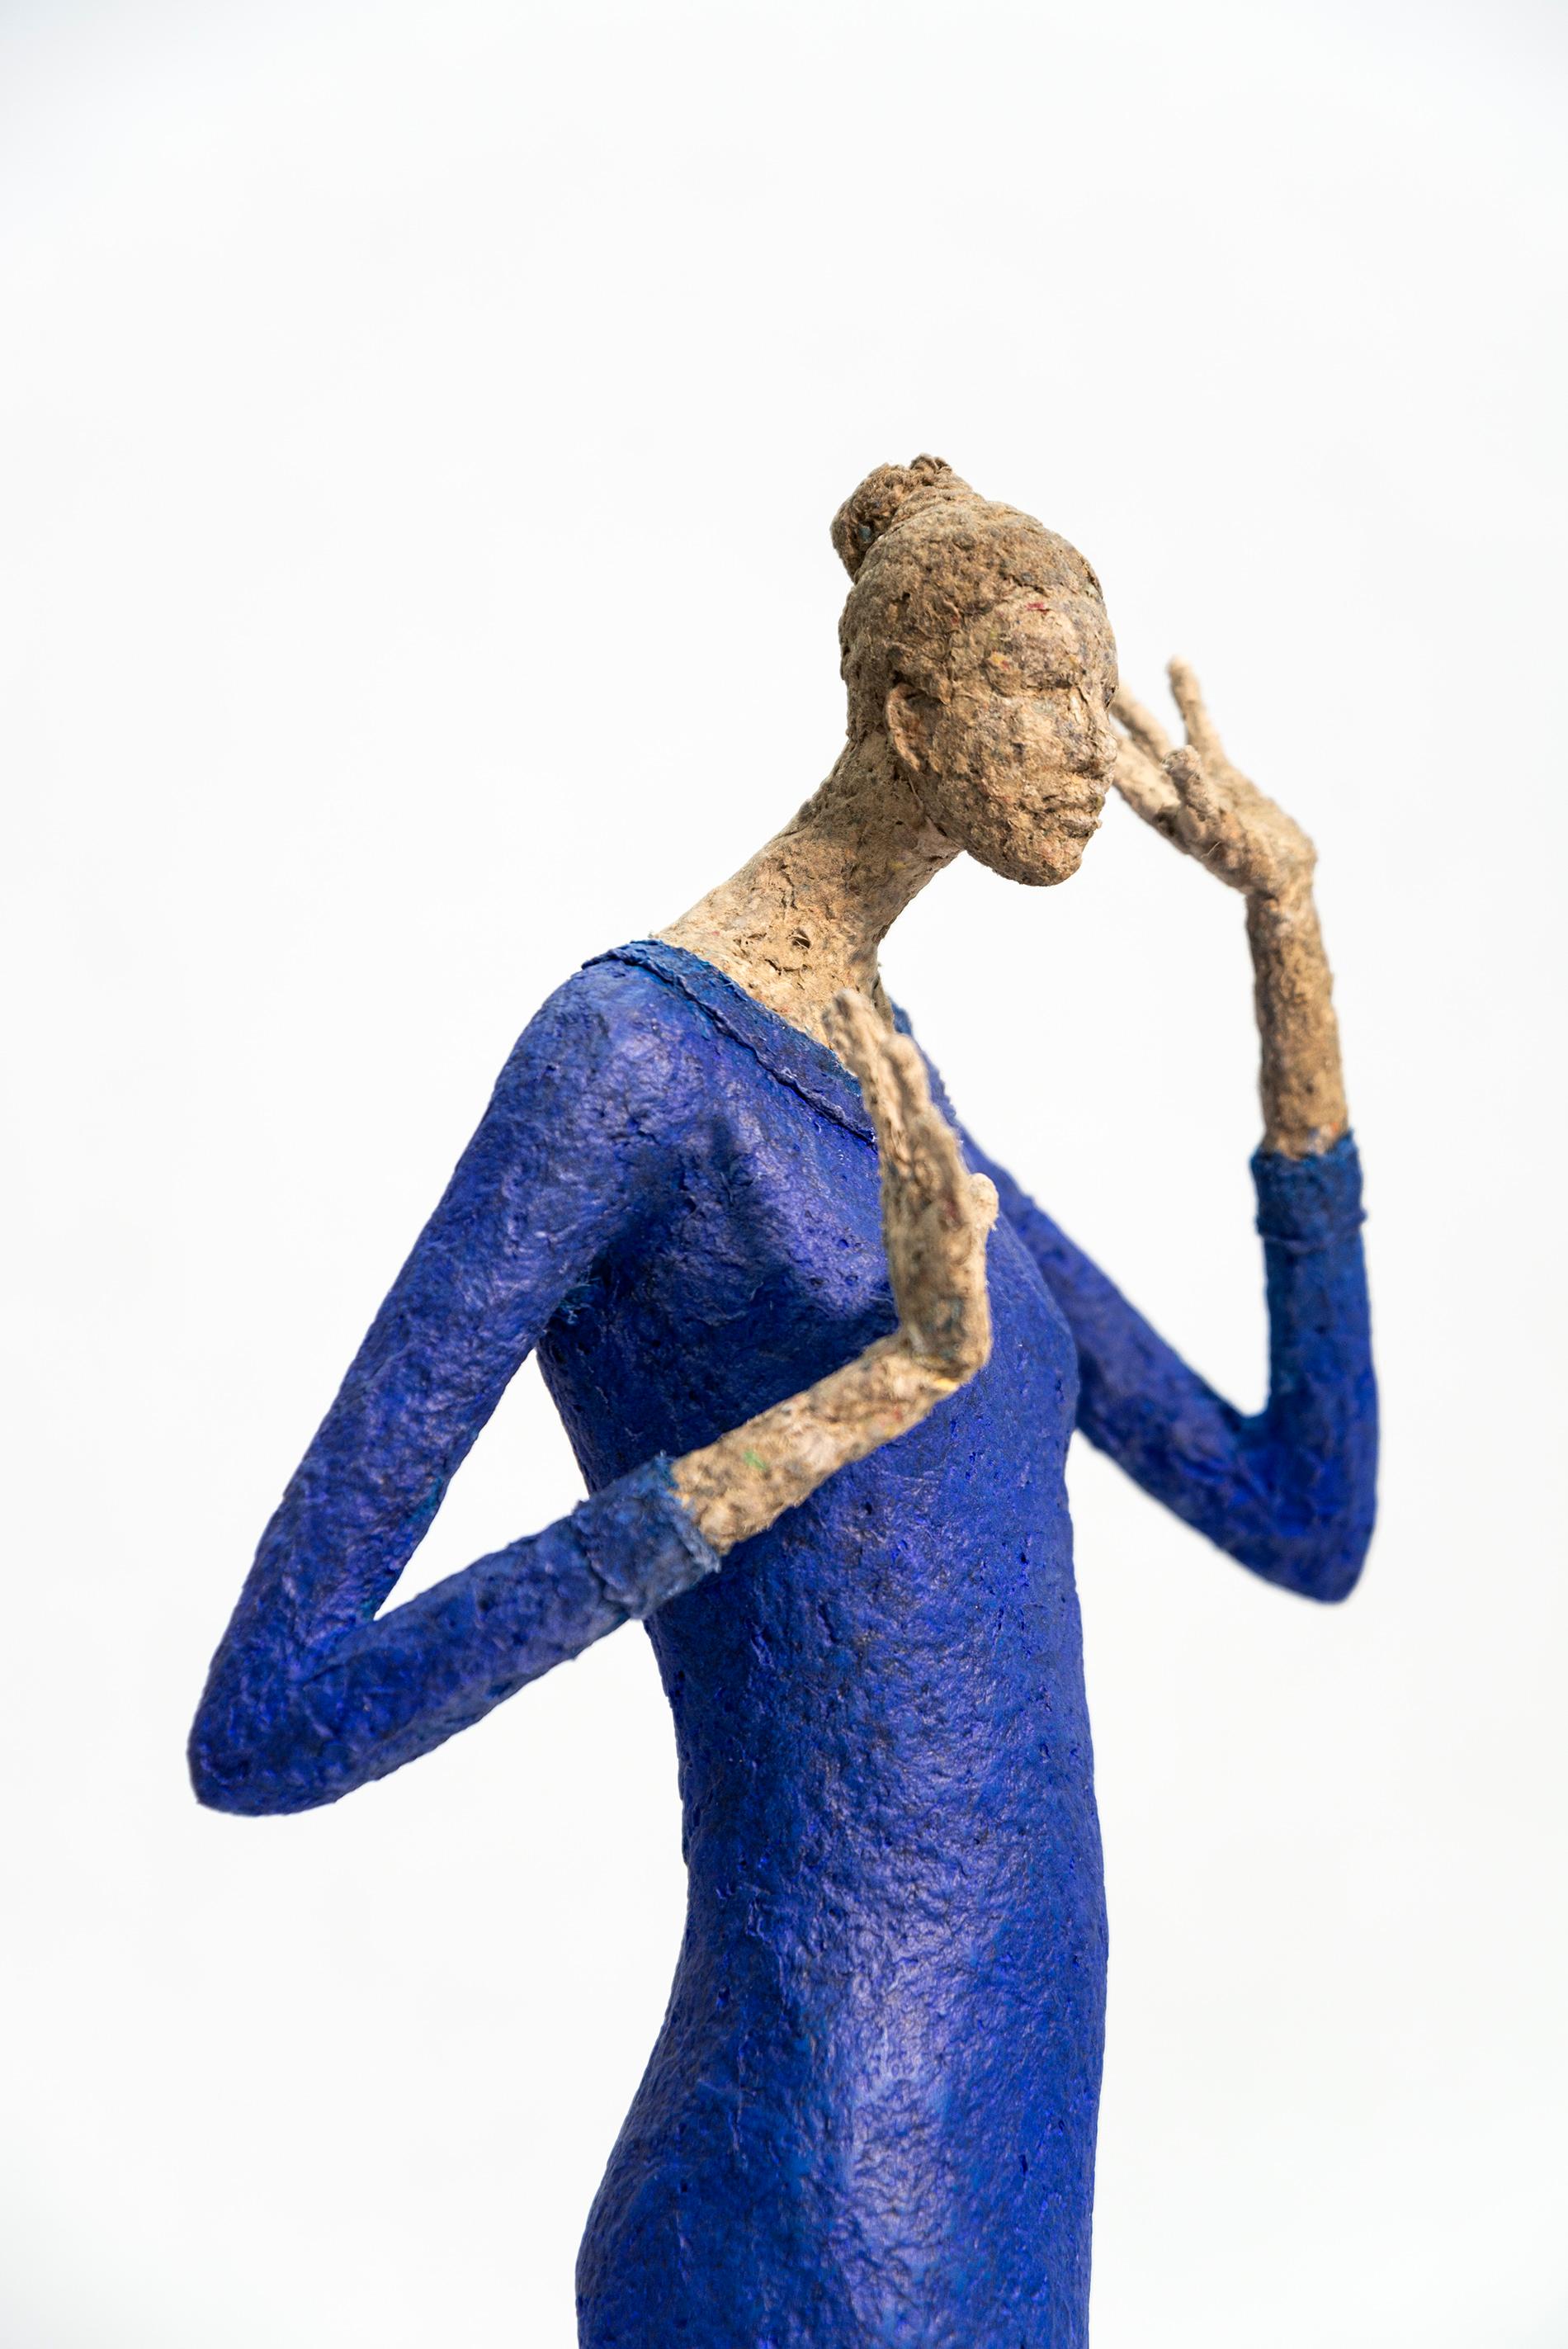 Cette silhouette féminine souple et élégante a été sculptée par l'artiste québécois Paul Duval. Il fait partie d'une série de pièces de table en papier mâché, en fil de fer et en métal, chacune étant imprégnée d'une personnalité distincte. Duval